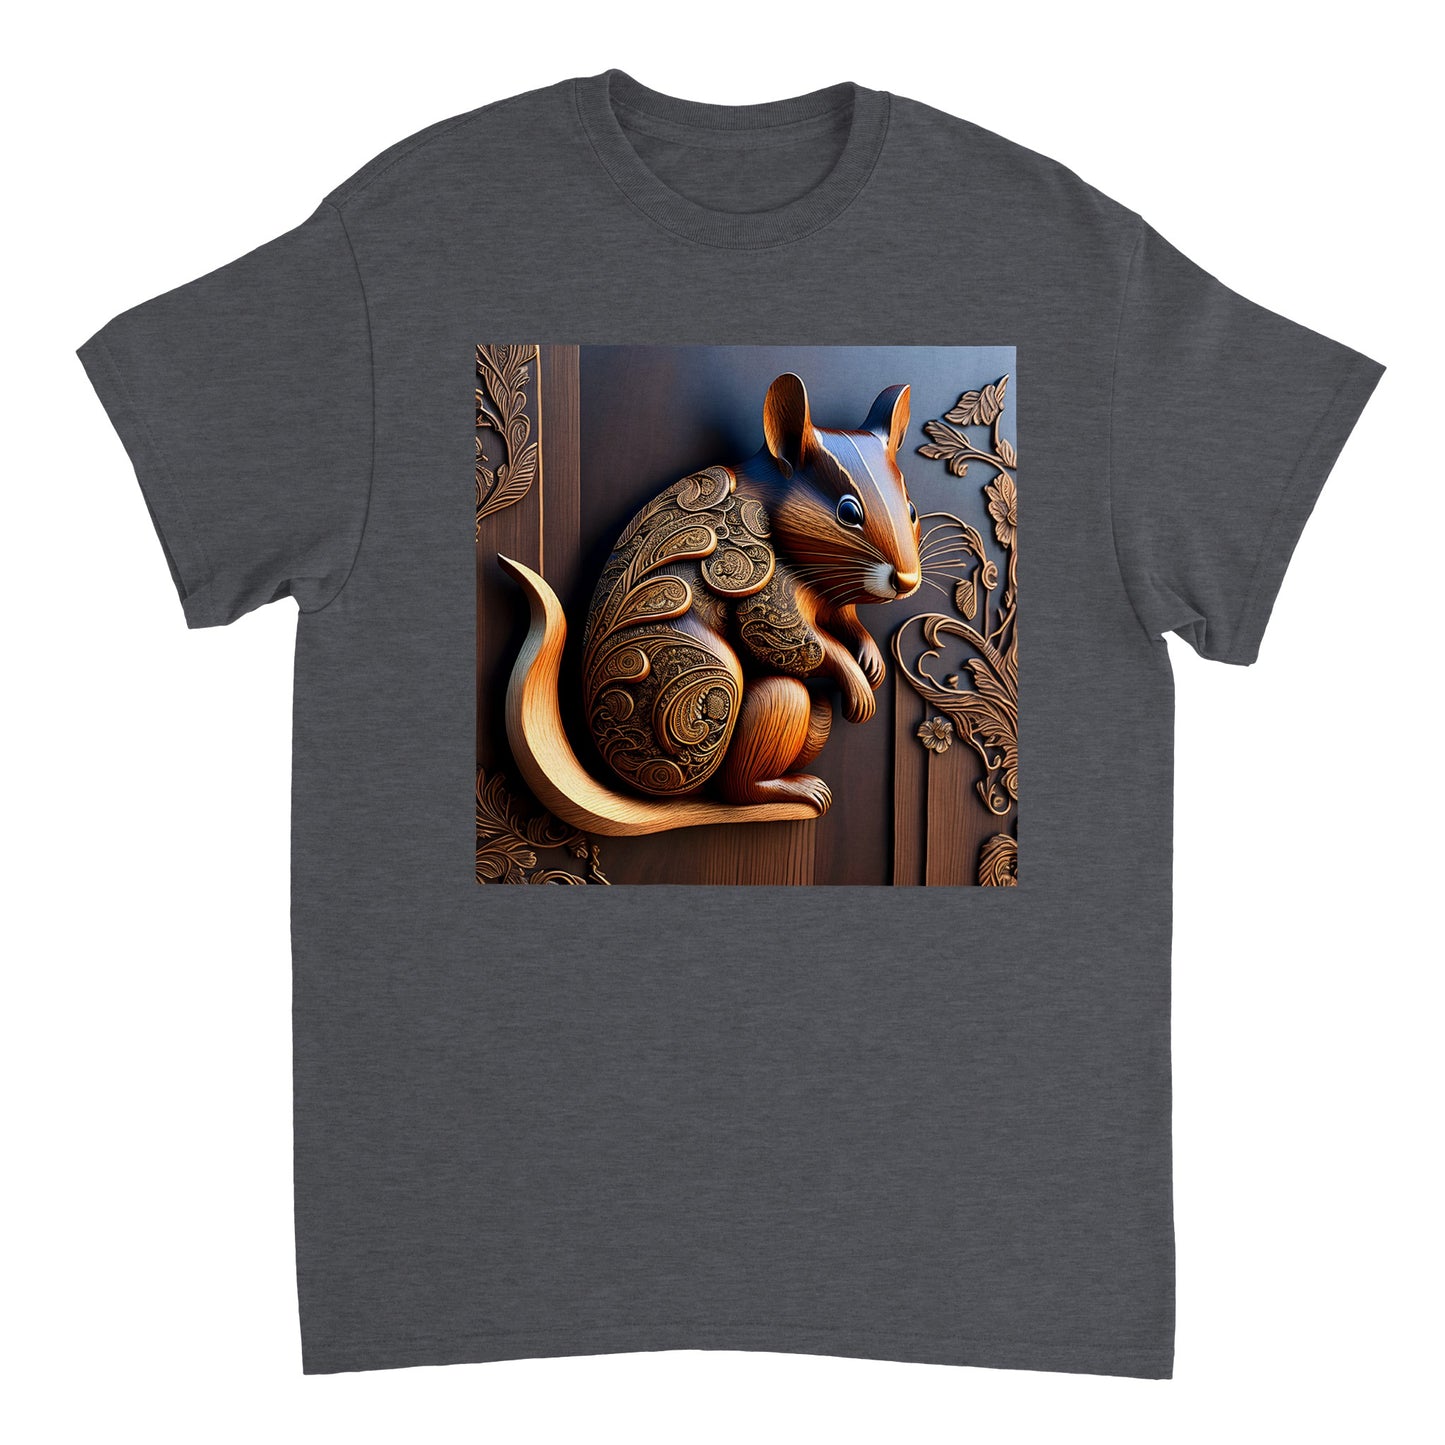 3D Wooden Animal Art - Heavyweight Unisex Crewneck T-shirt 77